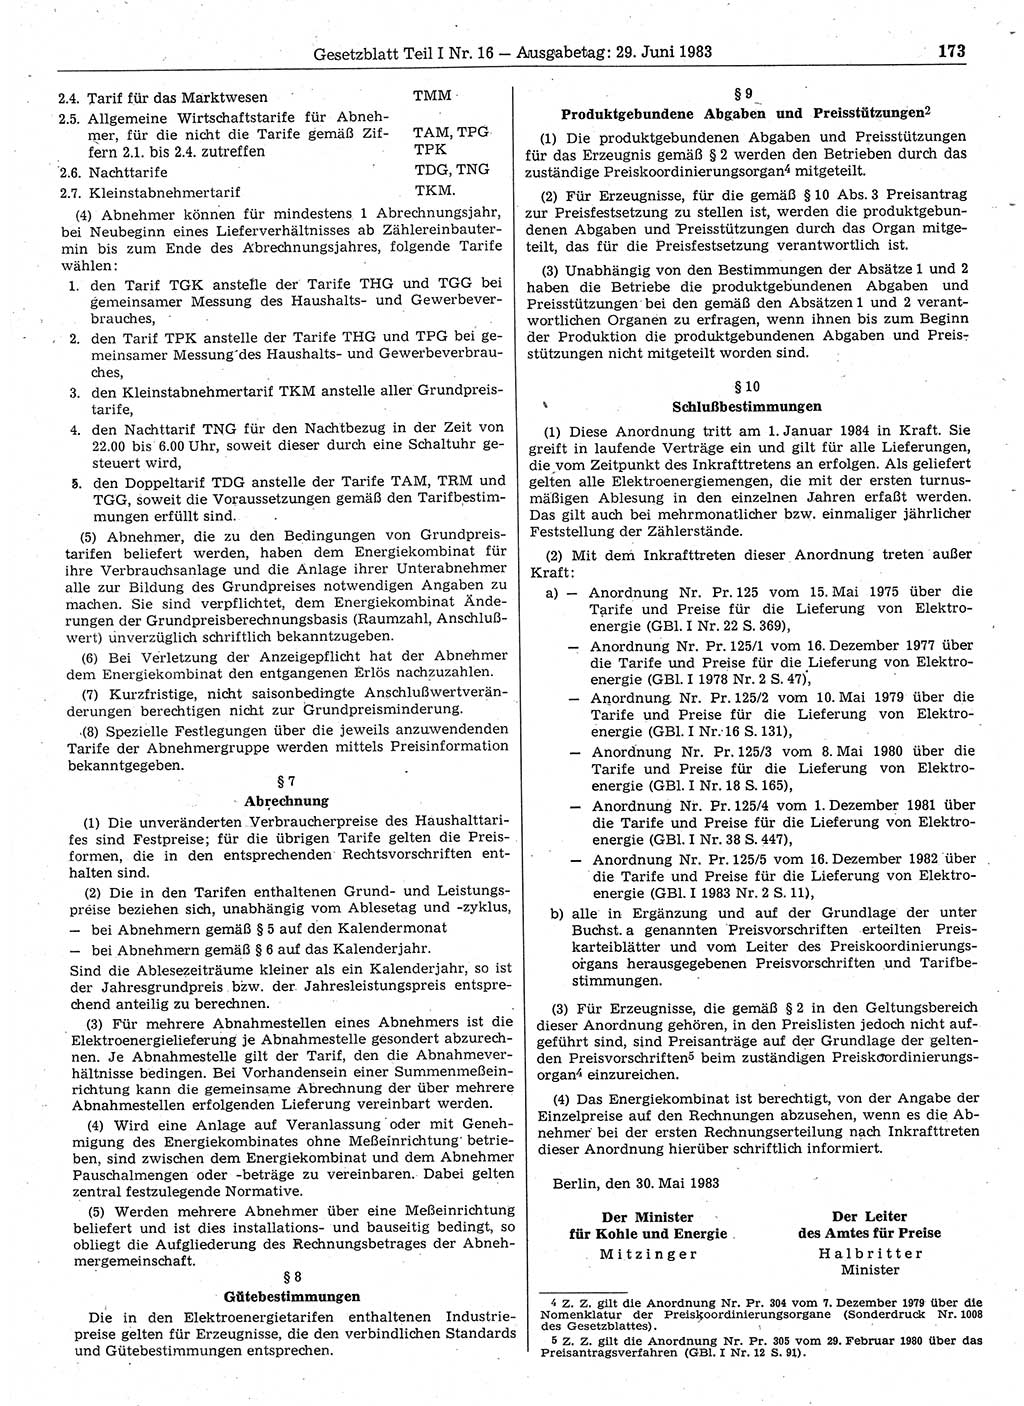 Gesetzblatt (GBl.) der Deutschen Demokratischen Republik (DDR) Teil Ⅰ 1983, Seite 173 (GBl. DDR Ⅰ 1983, S. 173)